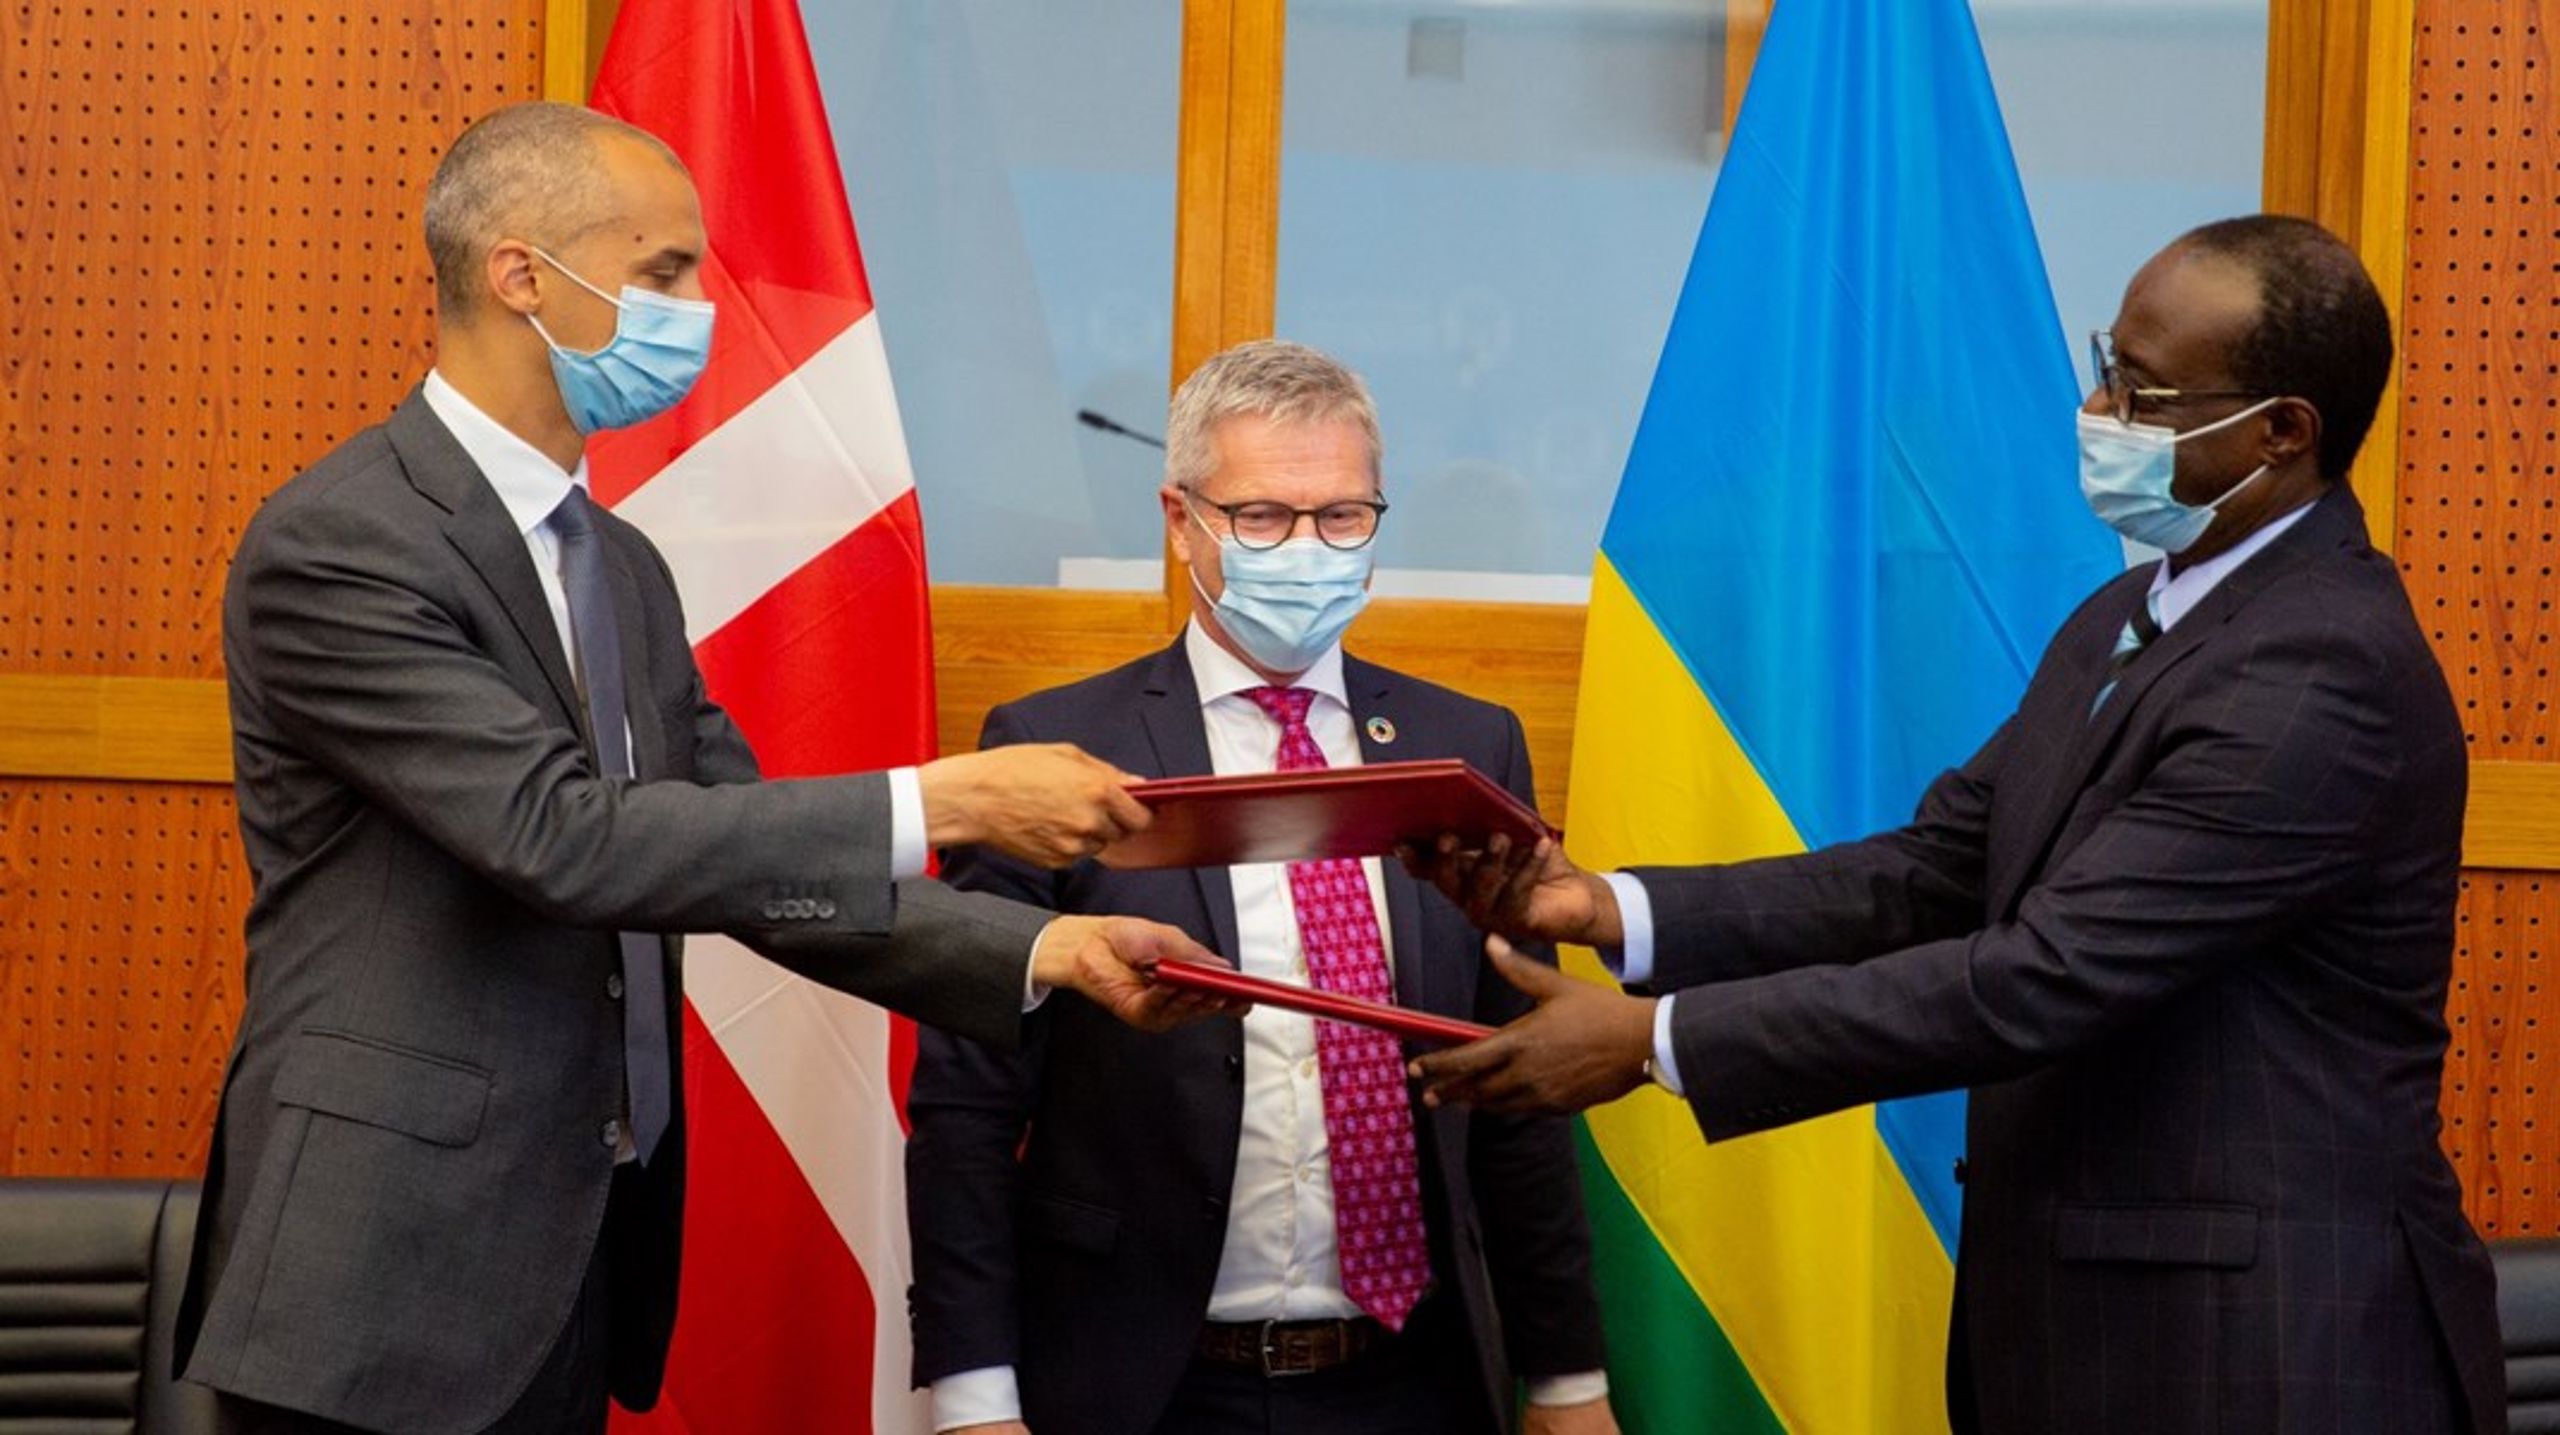 Tesfaye besøgte for nyligt Rwanda sammen med sin ministerkollega Flemming Møller Mortensen (S). Her blev to uforpligtende samarbejdsaftaler underskrevet.